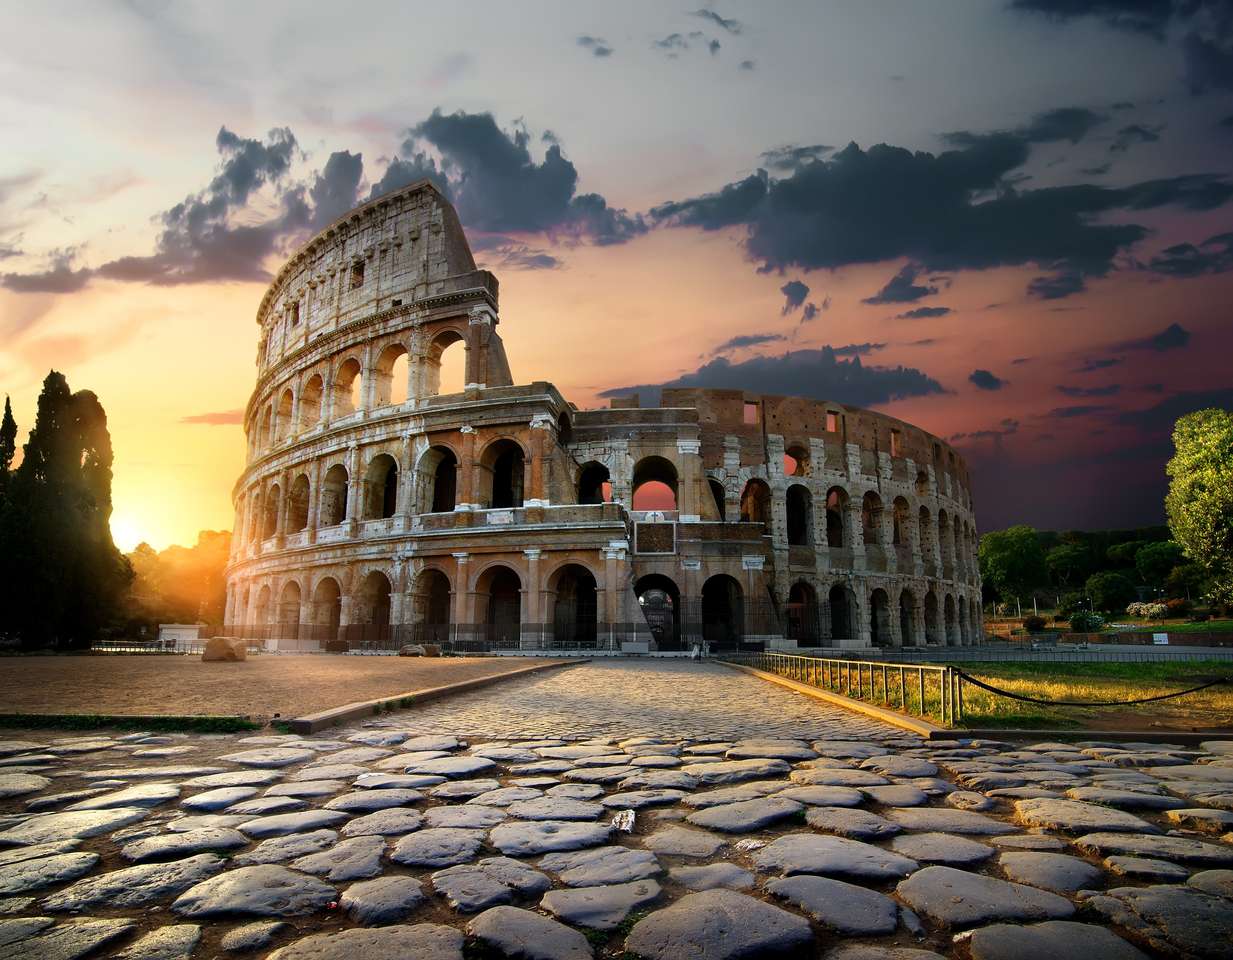 Luz do sol nas antigas ruínas do Coliseu em Roma, Itália puzzle online a partir de fotografia